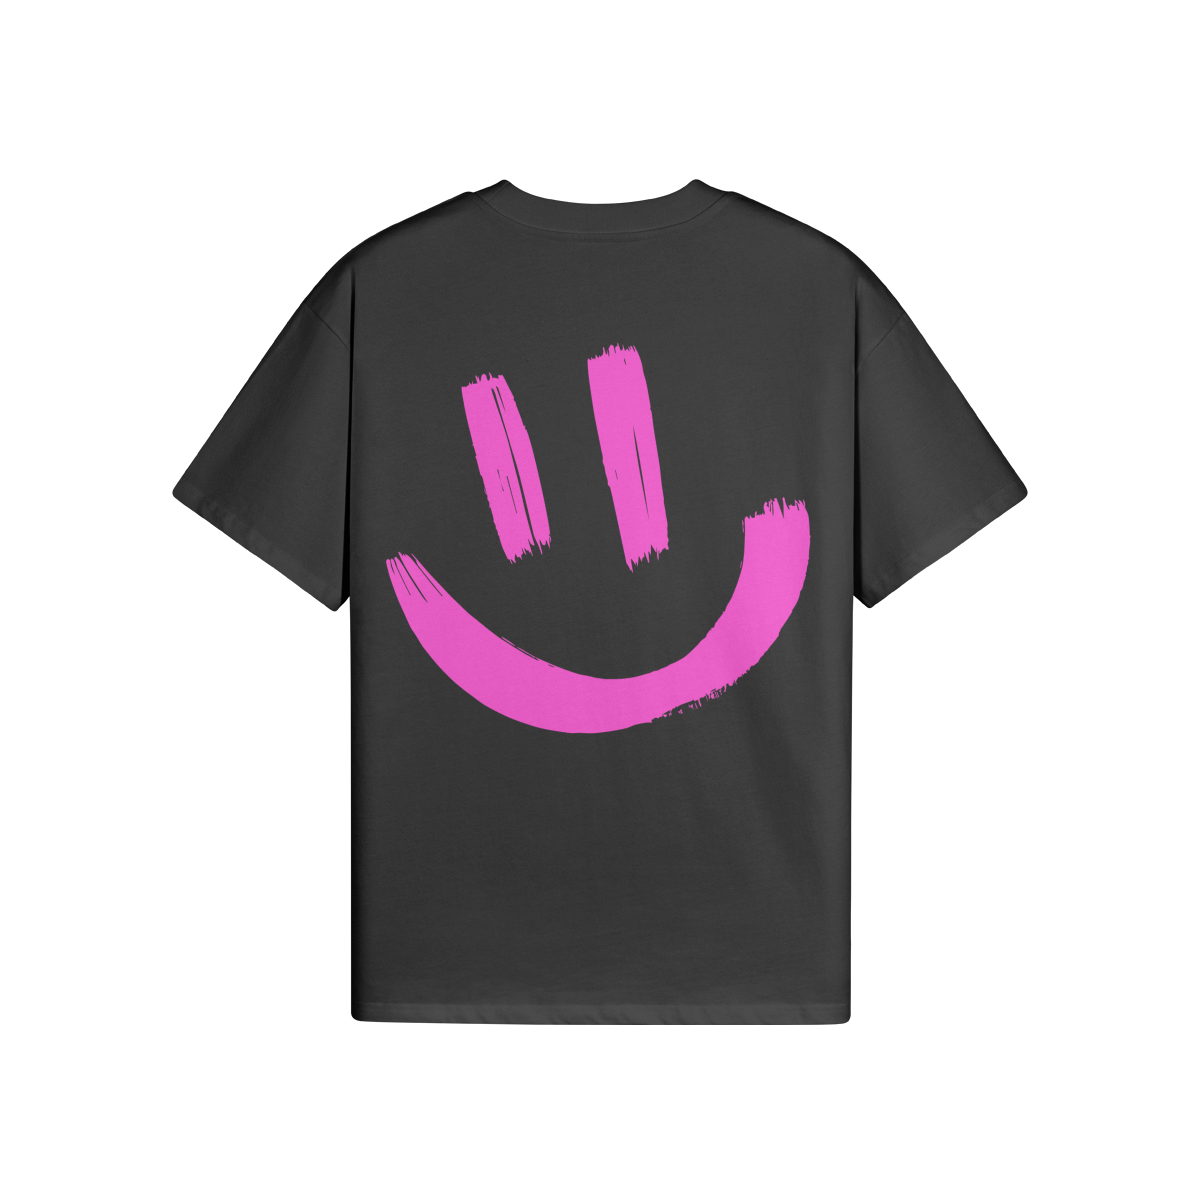 BACK - $MILE M. (BACK PRINT) - Unisex Oversized T-shirt